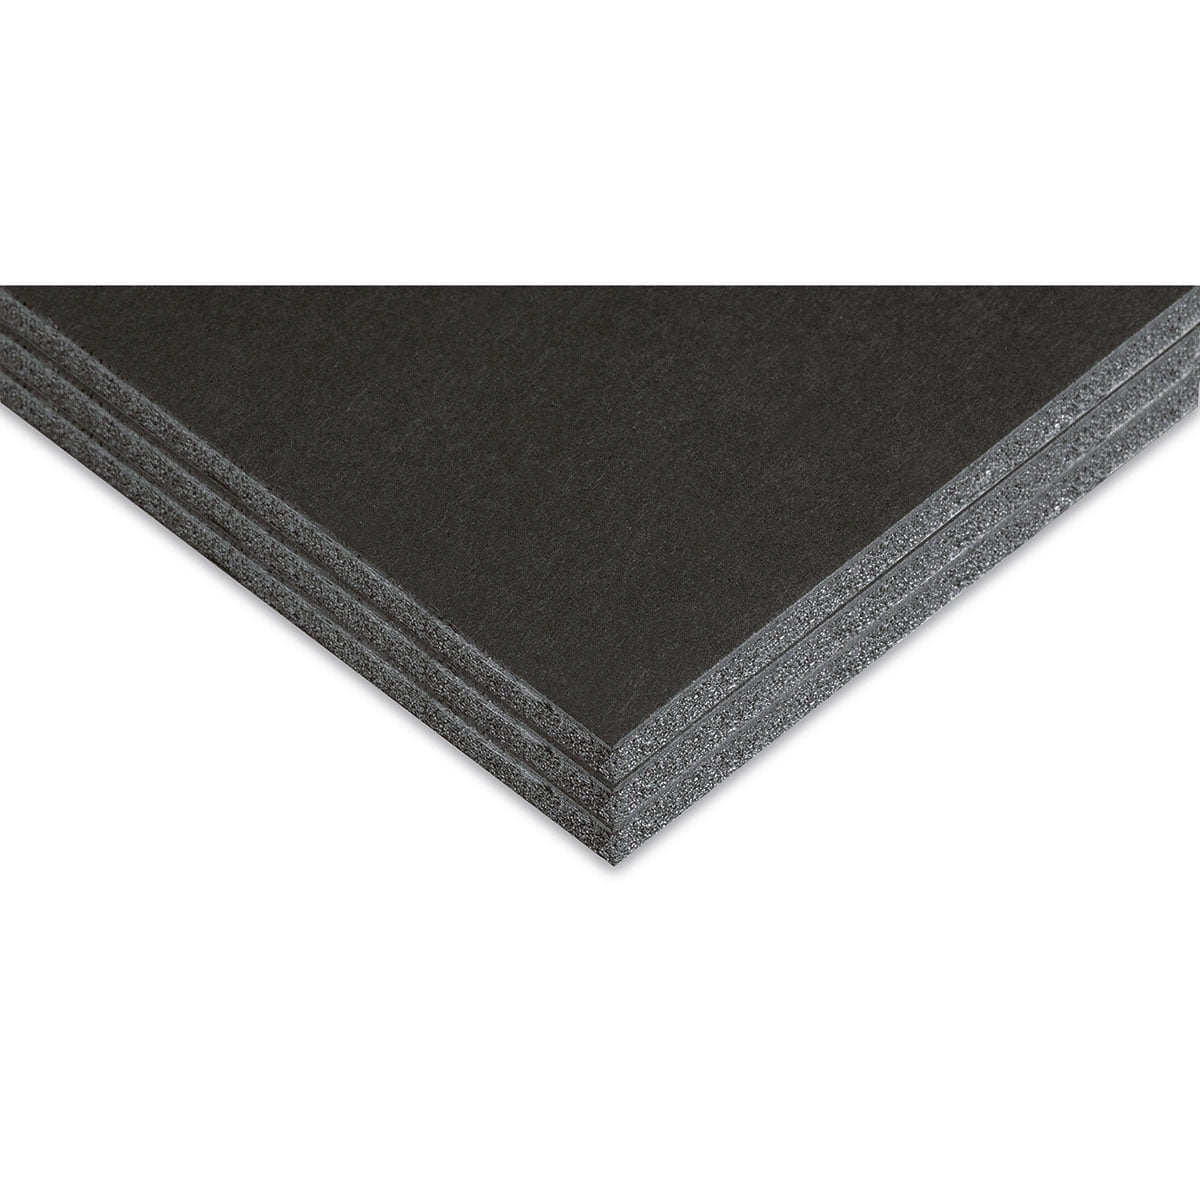 16 x 20 Black Foam Boards, 3ct.